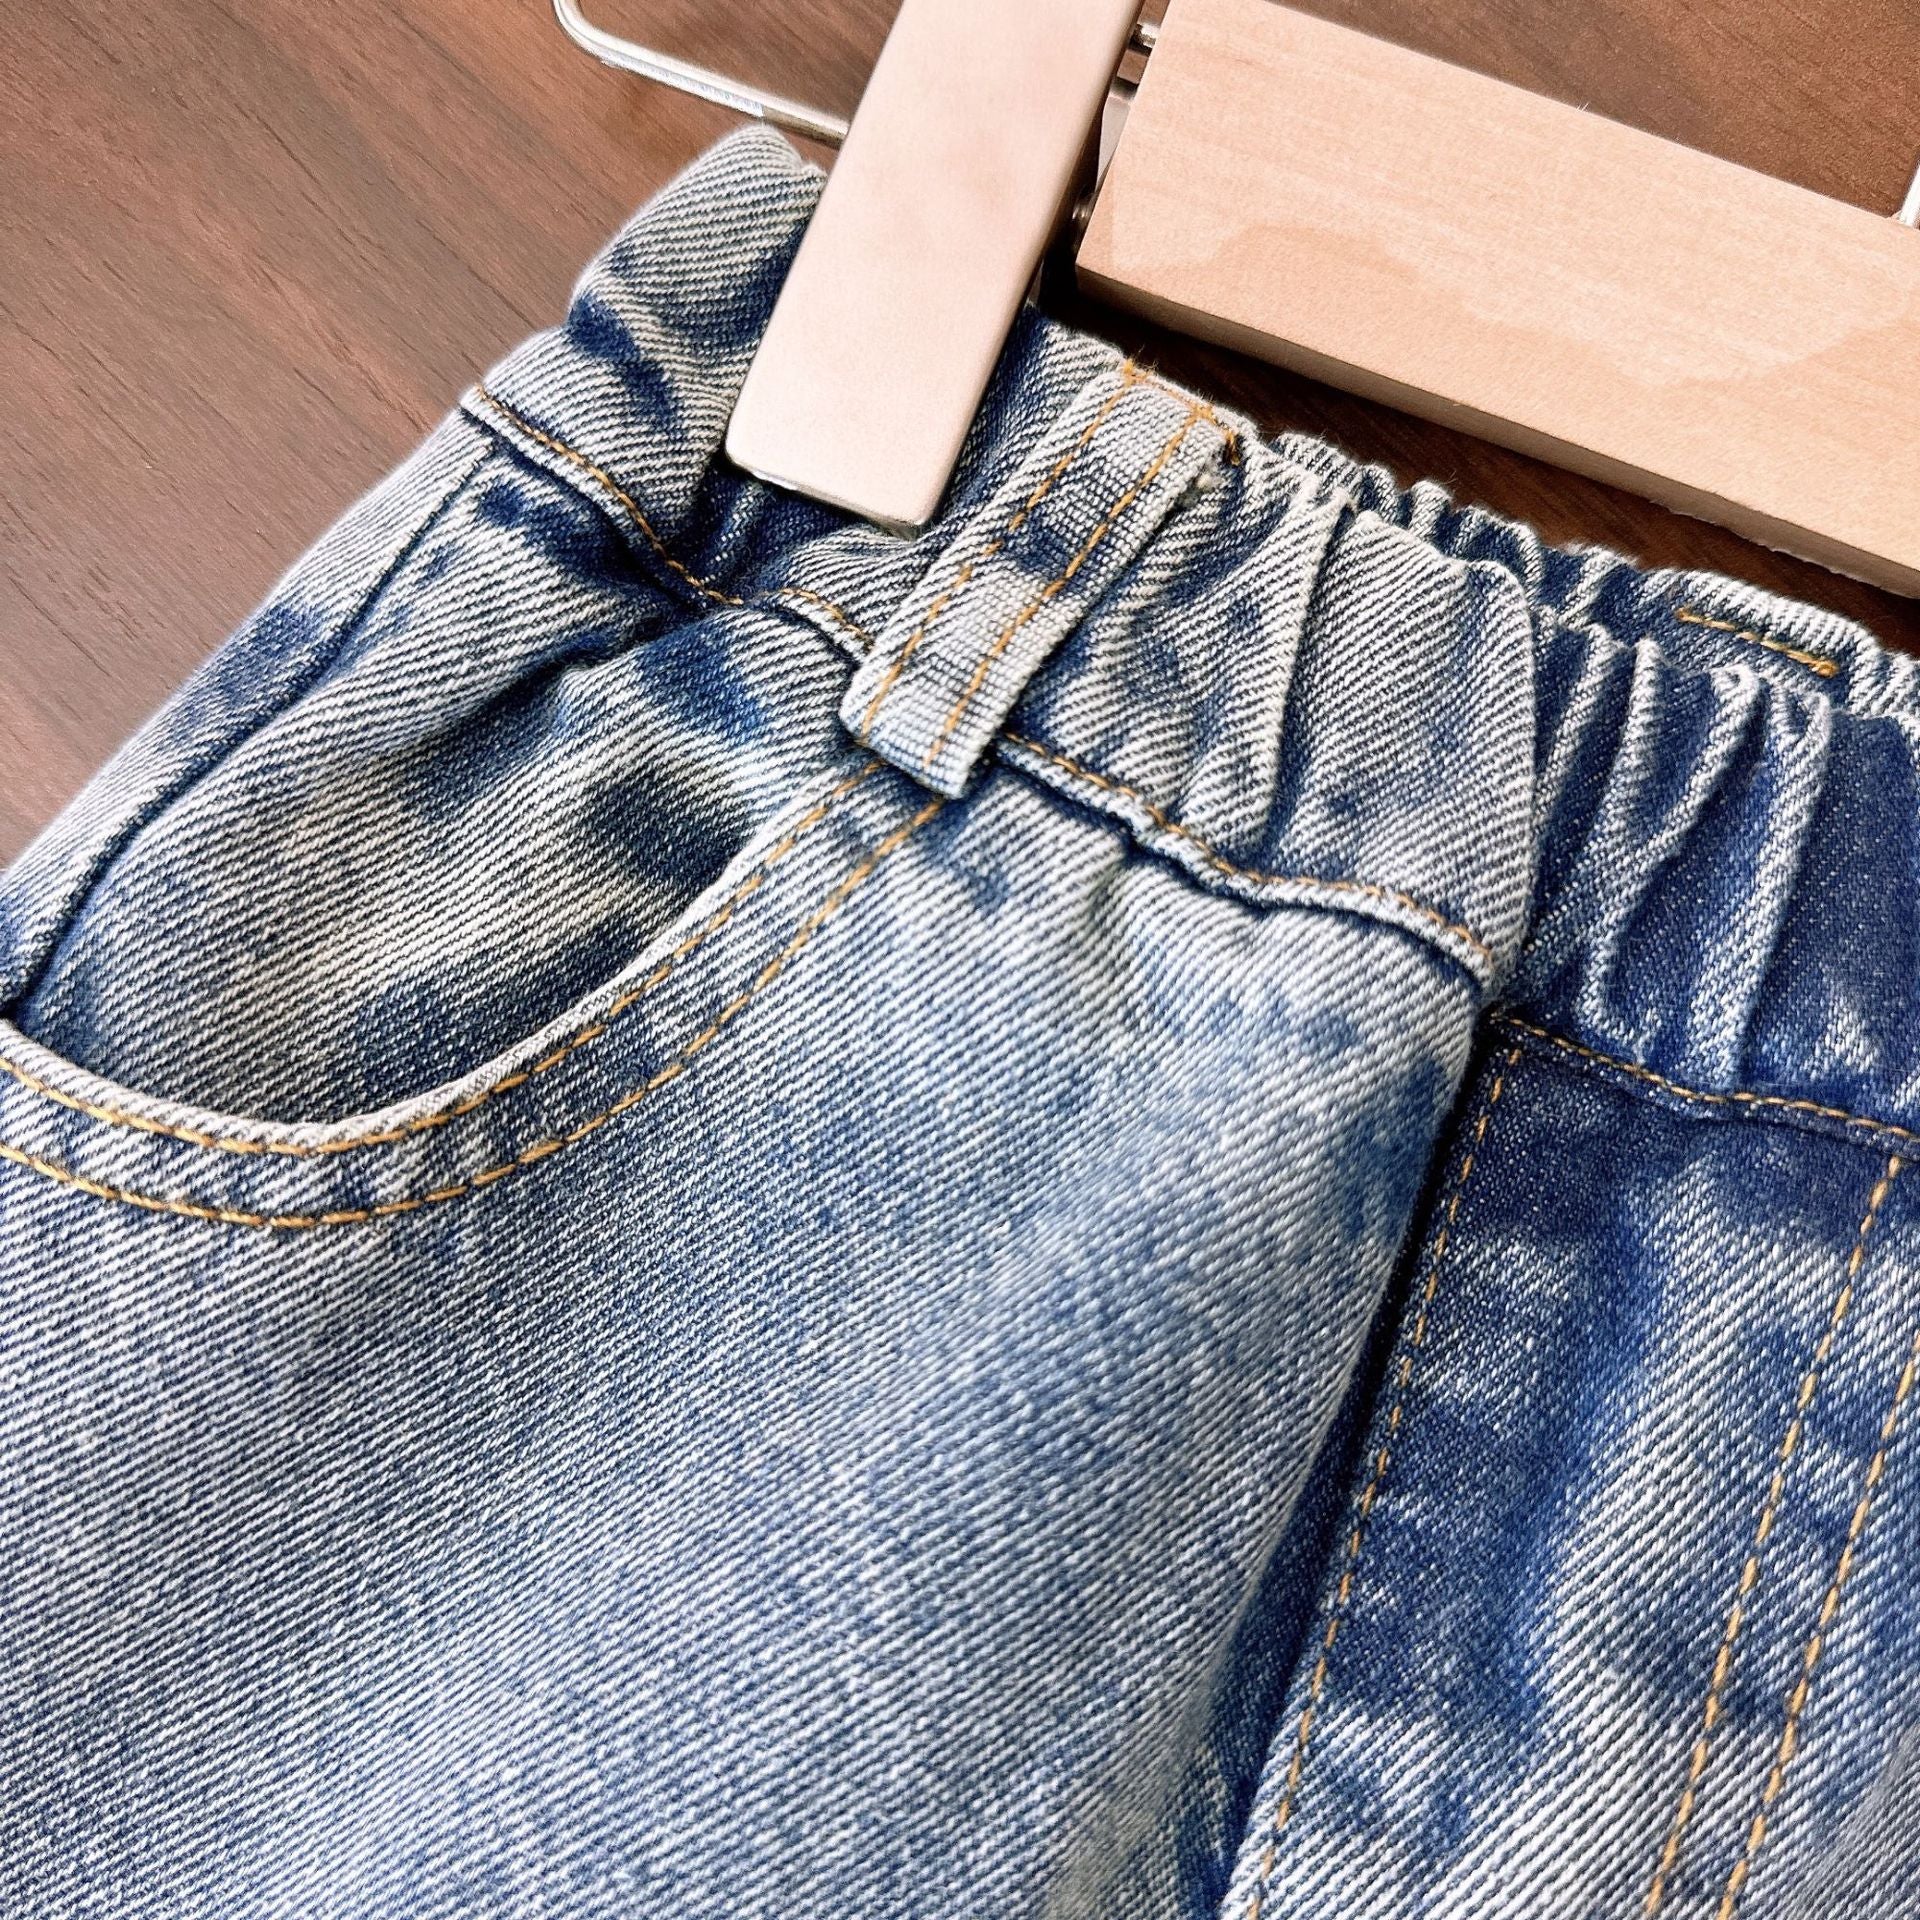 [363751] - Setelan Baju Blouse Lengan Panjang Celana Panjang Jeans Fashion Anak Perempuan - Motif Soft Lace